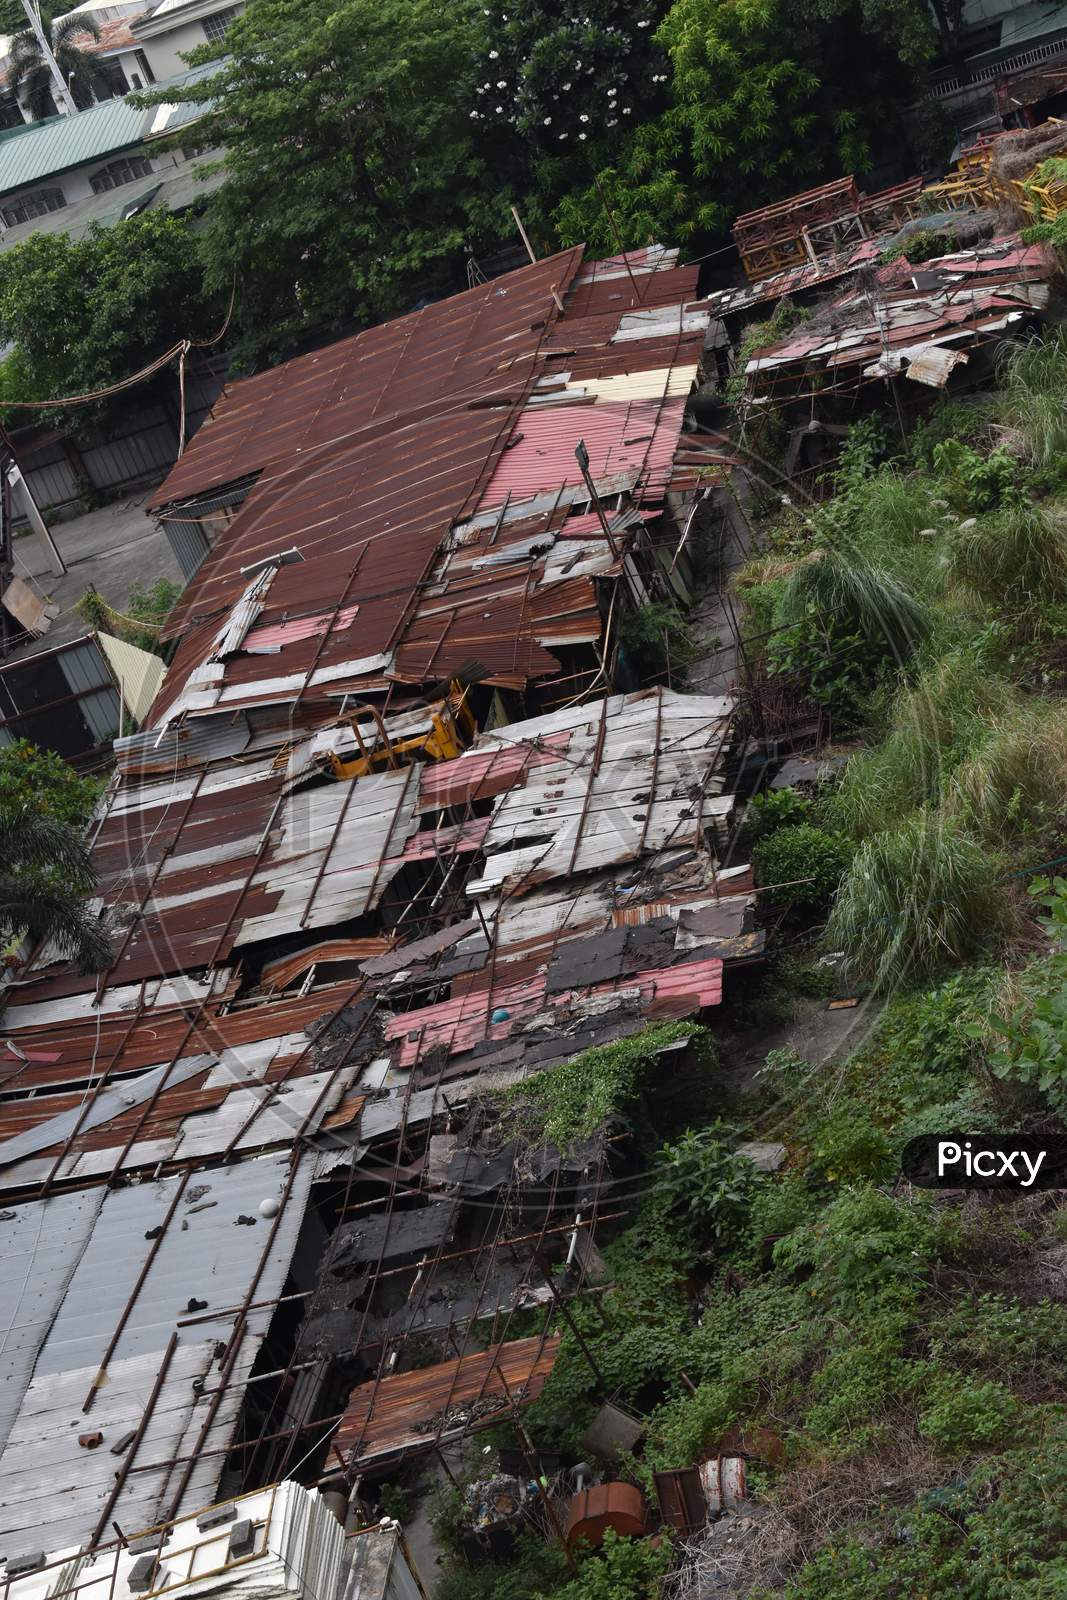 The slum area aerial view in Manila Philippines